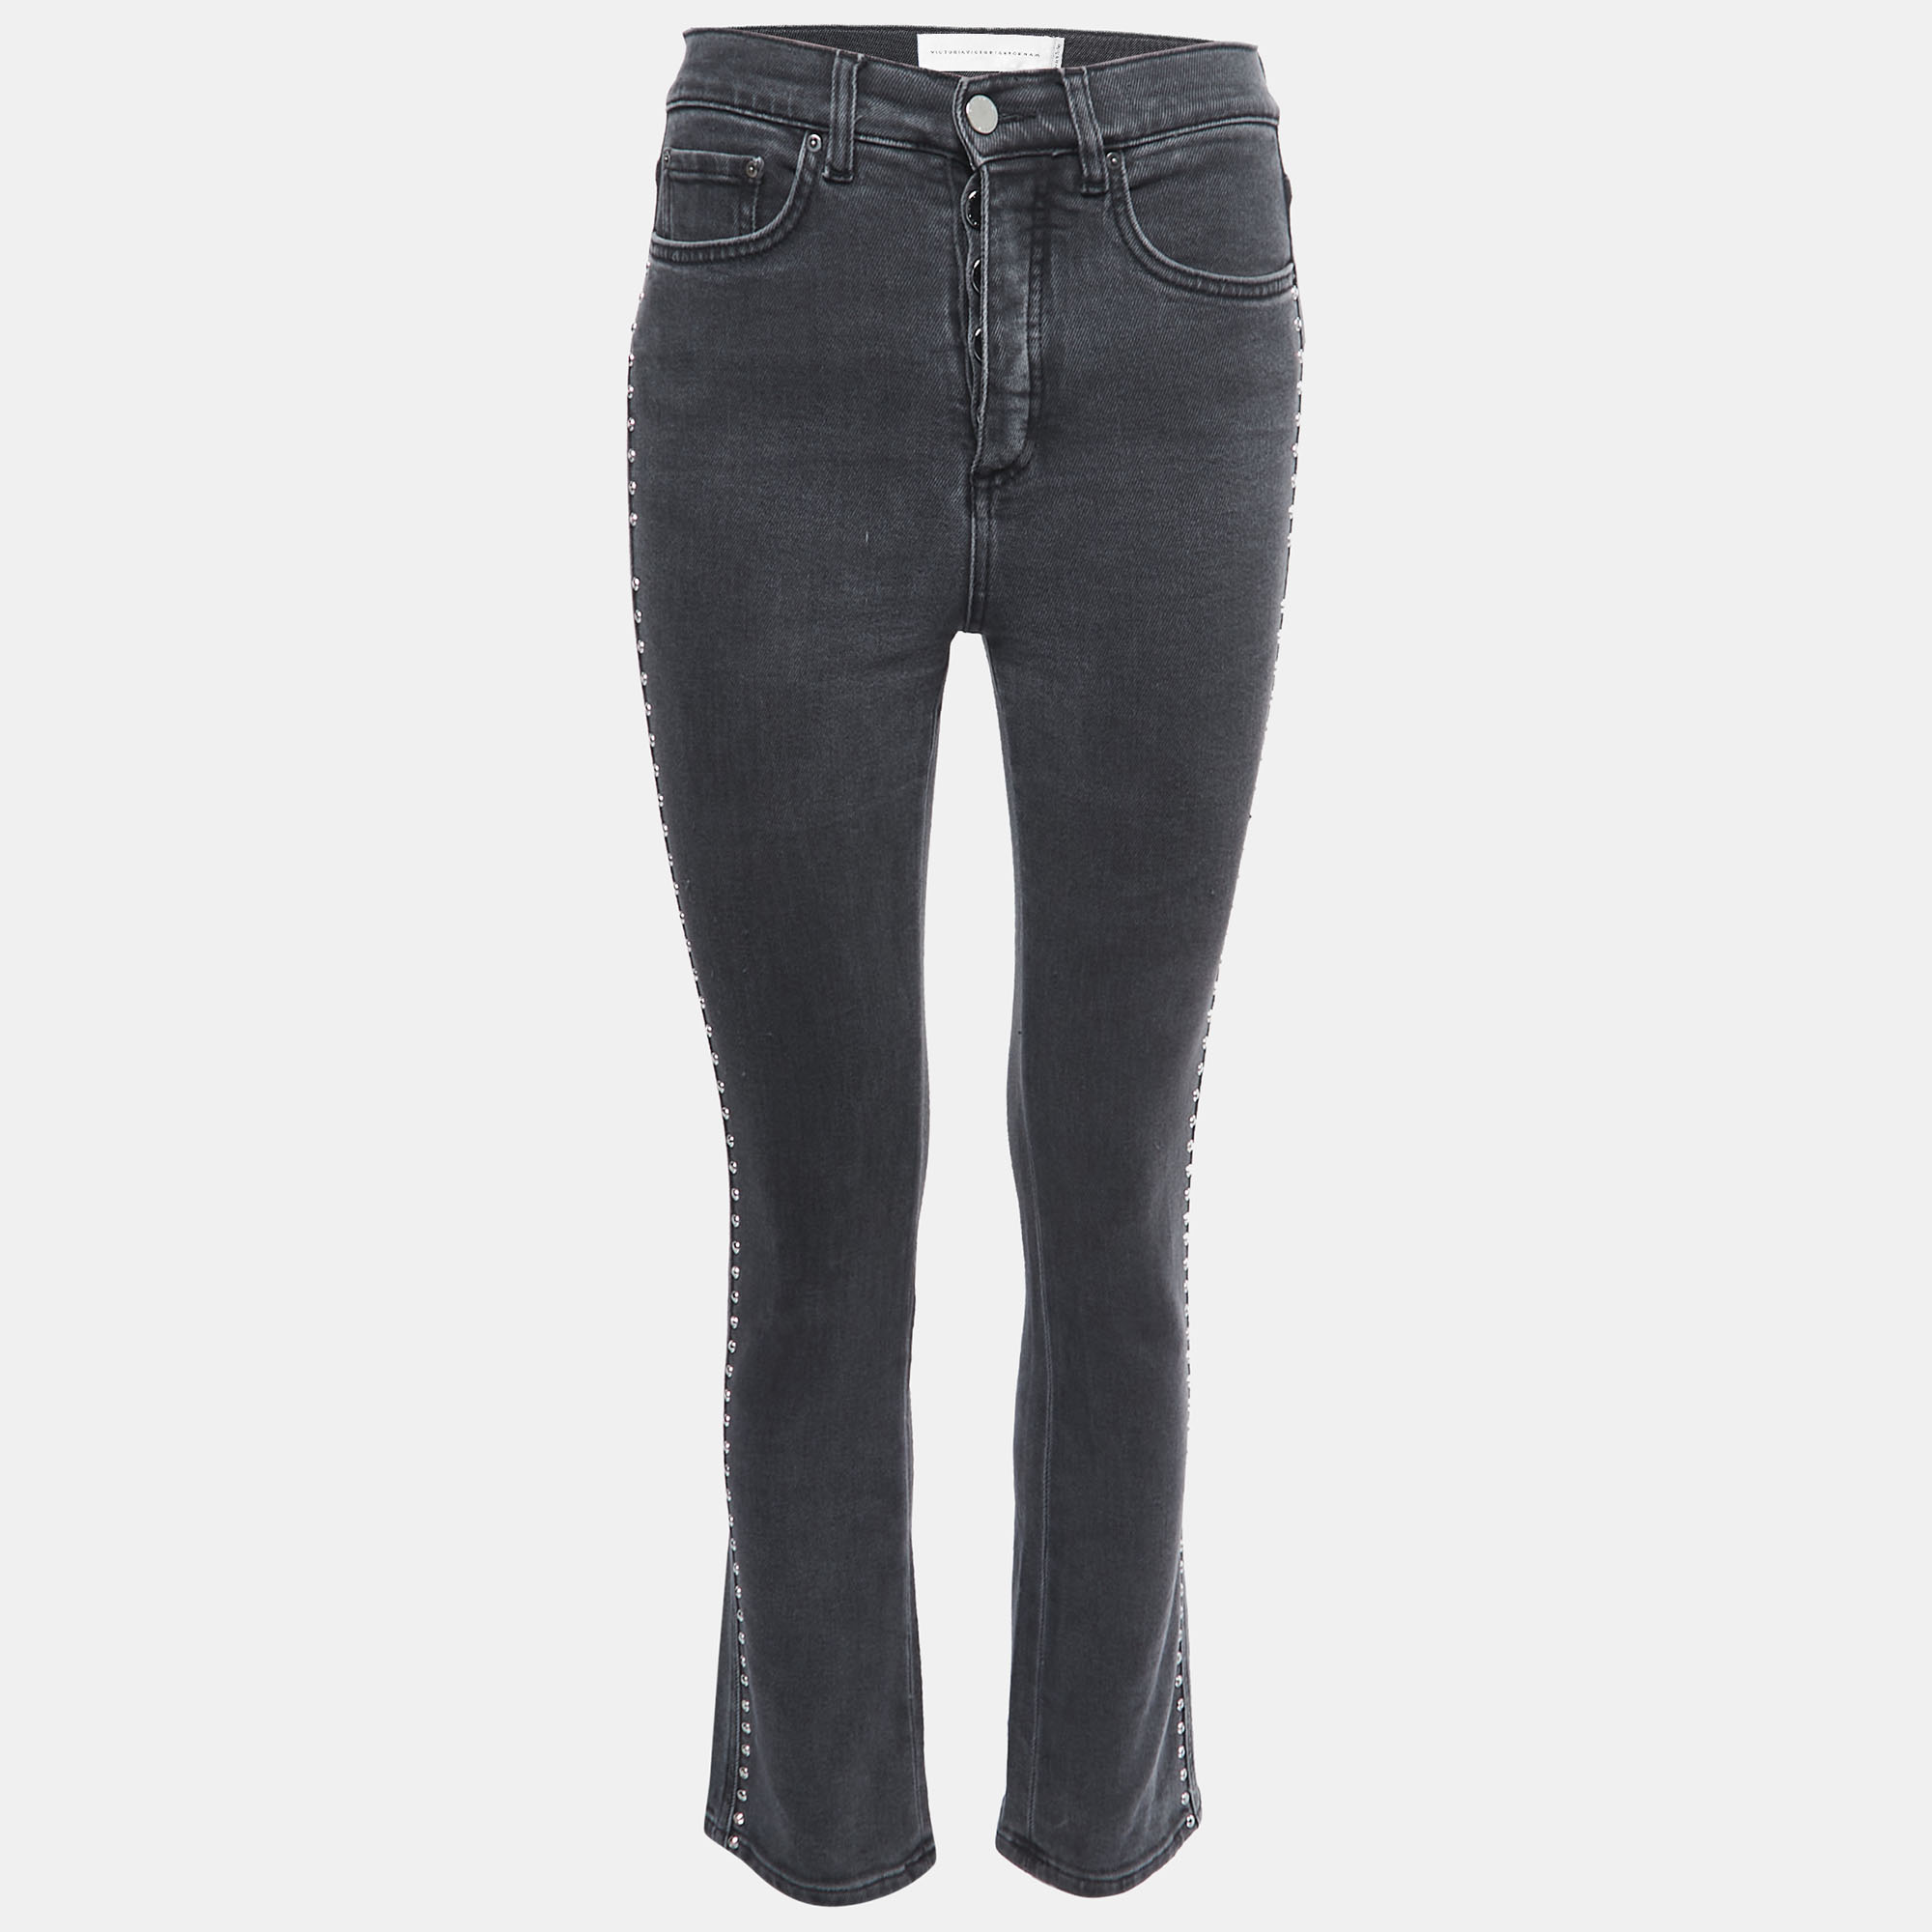 

Victoria Victoria Beckham Grey Denim Studded Jeans  Waist 25